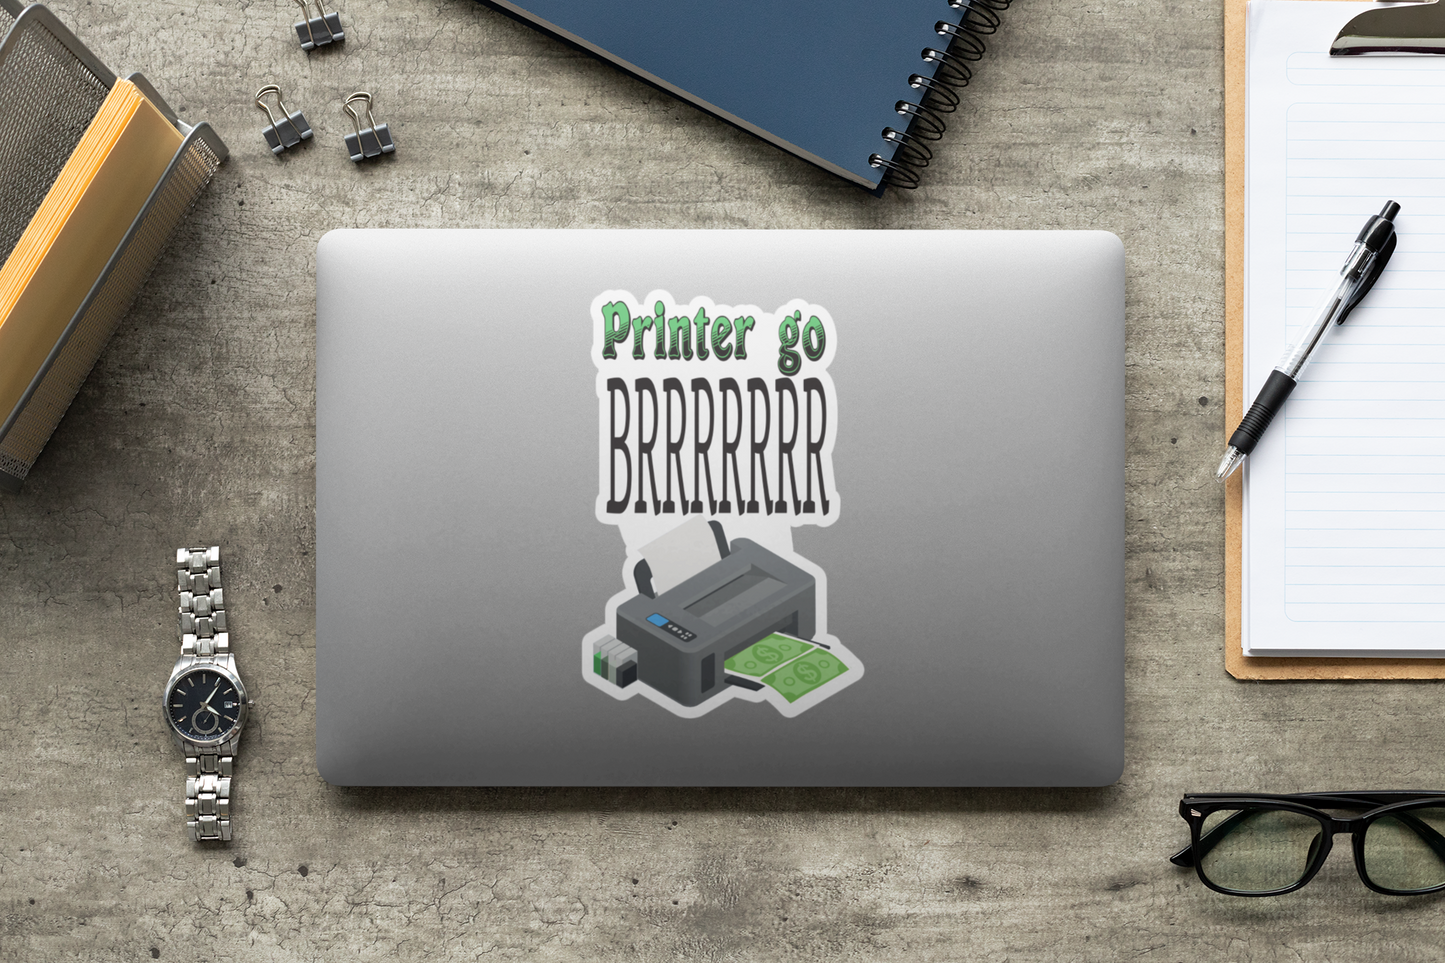 Printer go BRRRRRRRR sticker